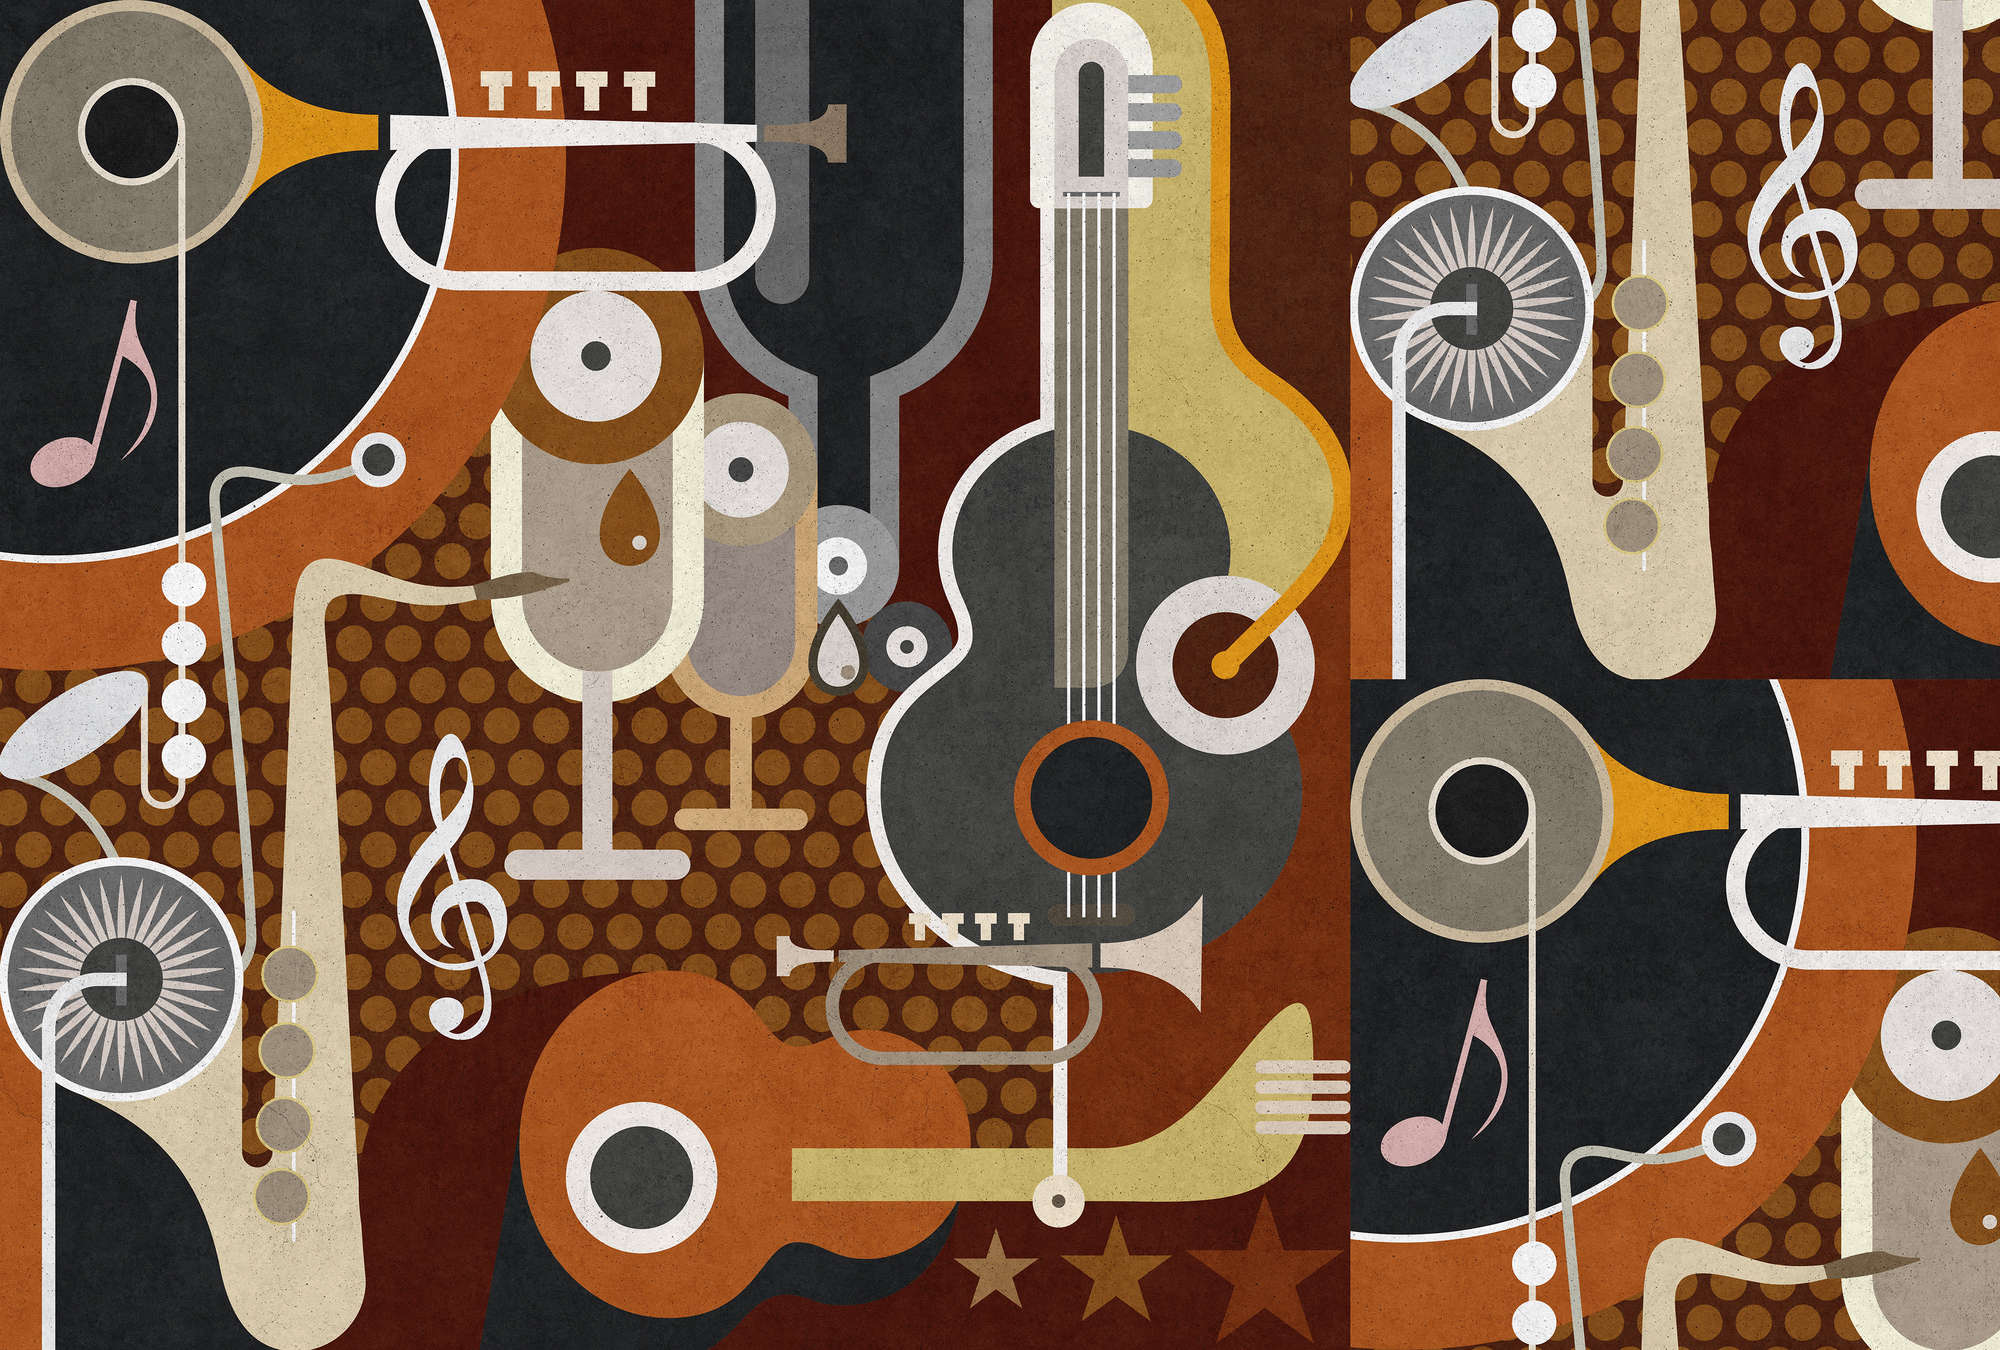             Wall of sound 1 - Papel pintado estructura de hormigón, instrumentos musicales abstractos - Beige, Marrón | Perla liso no tejido
        